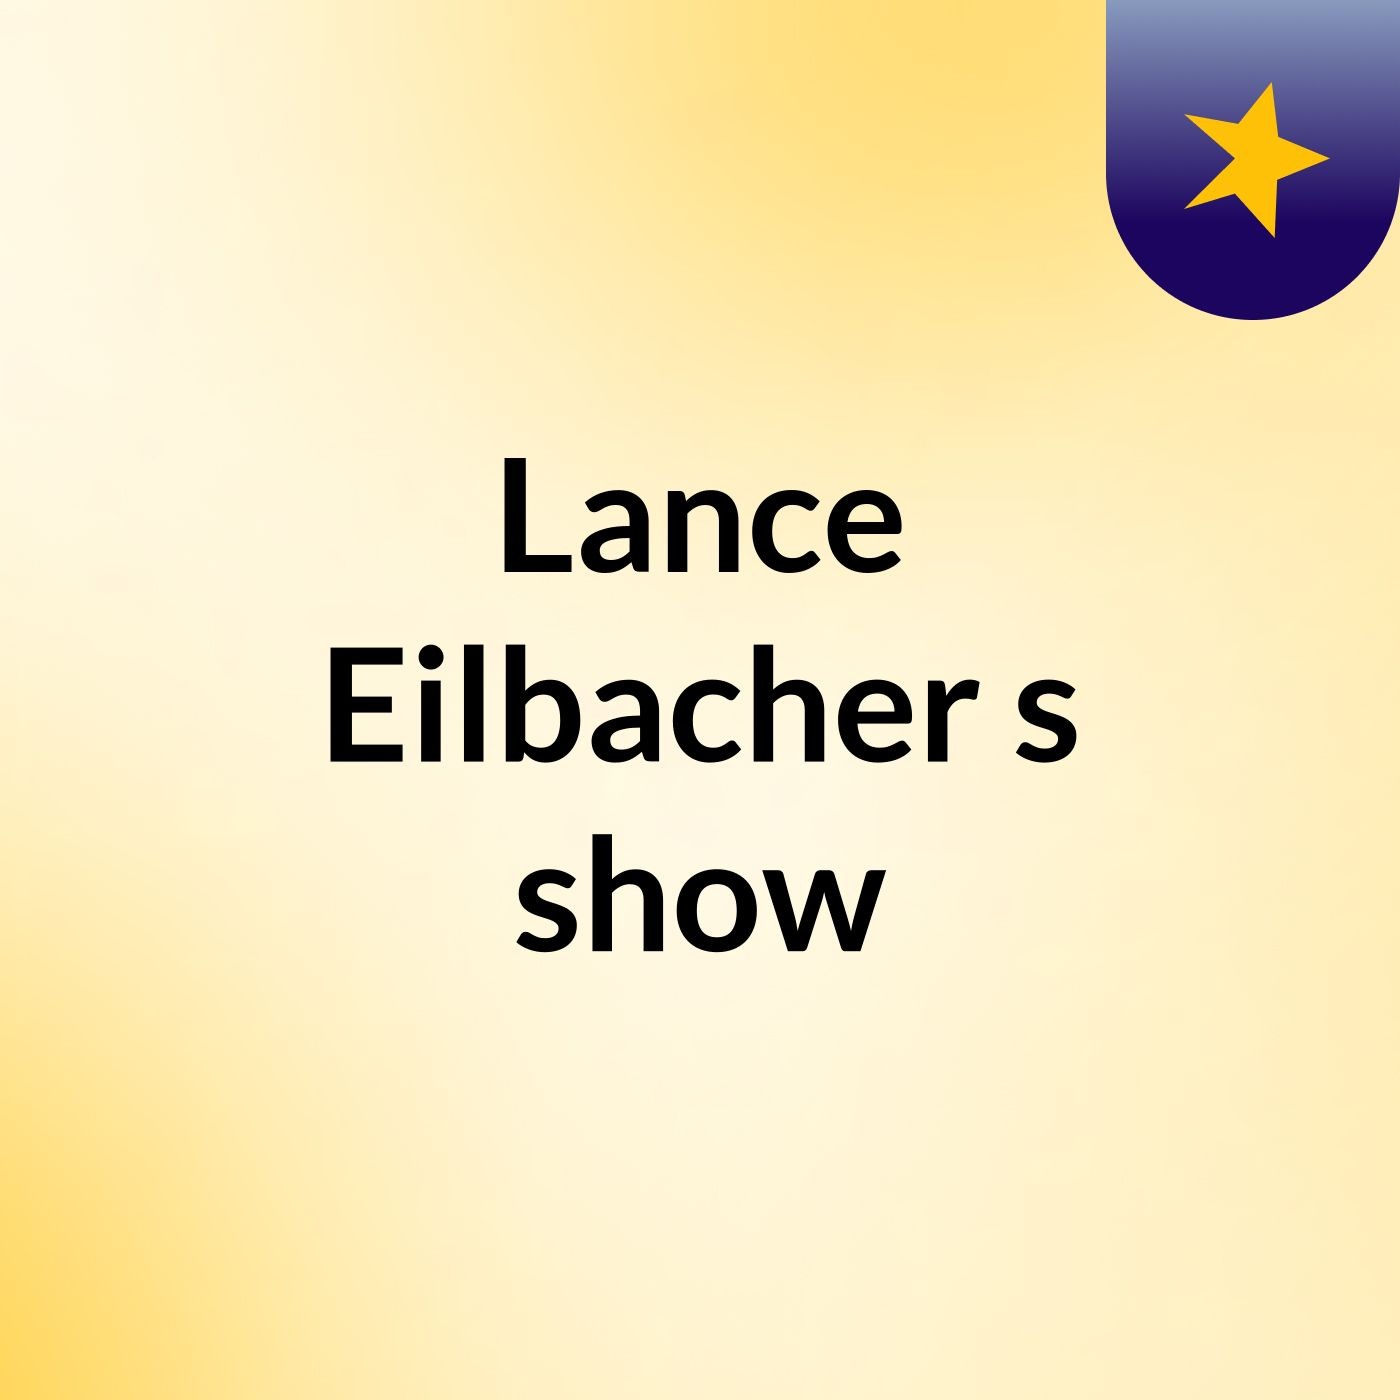 Lance Eilbacher's show